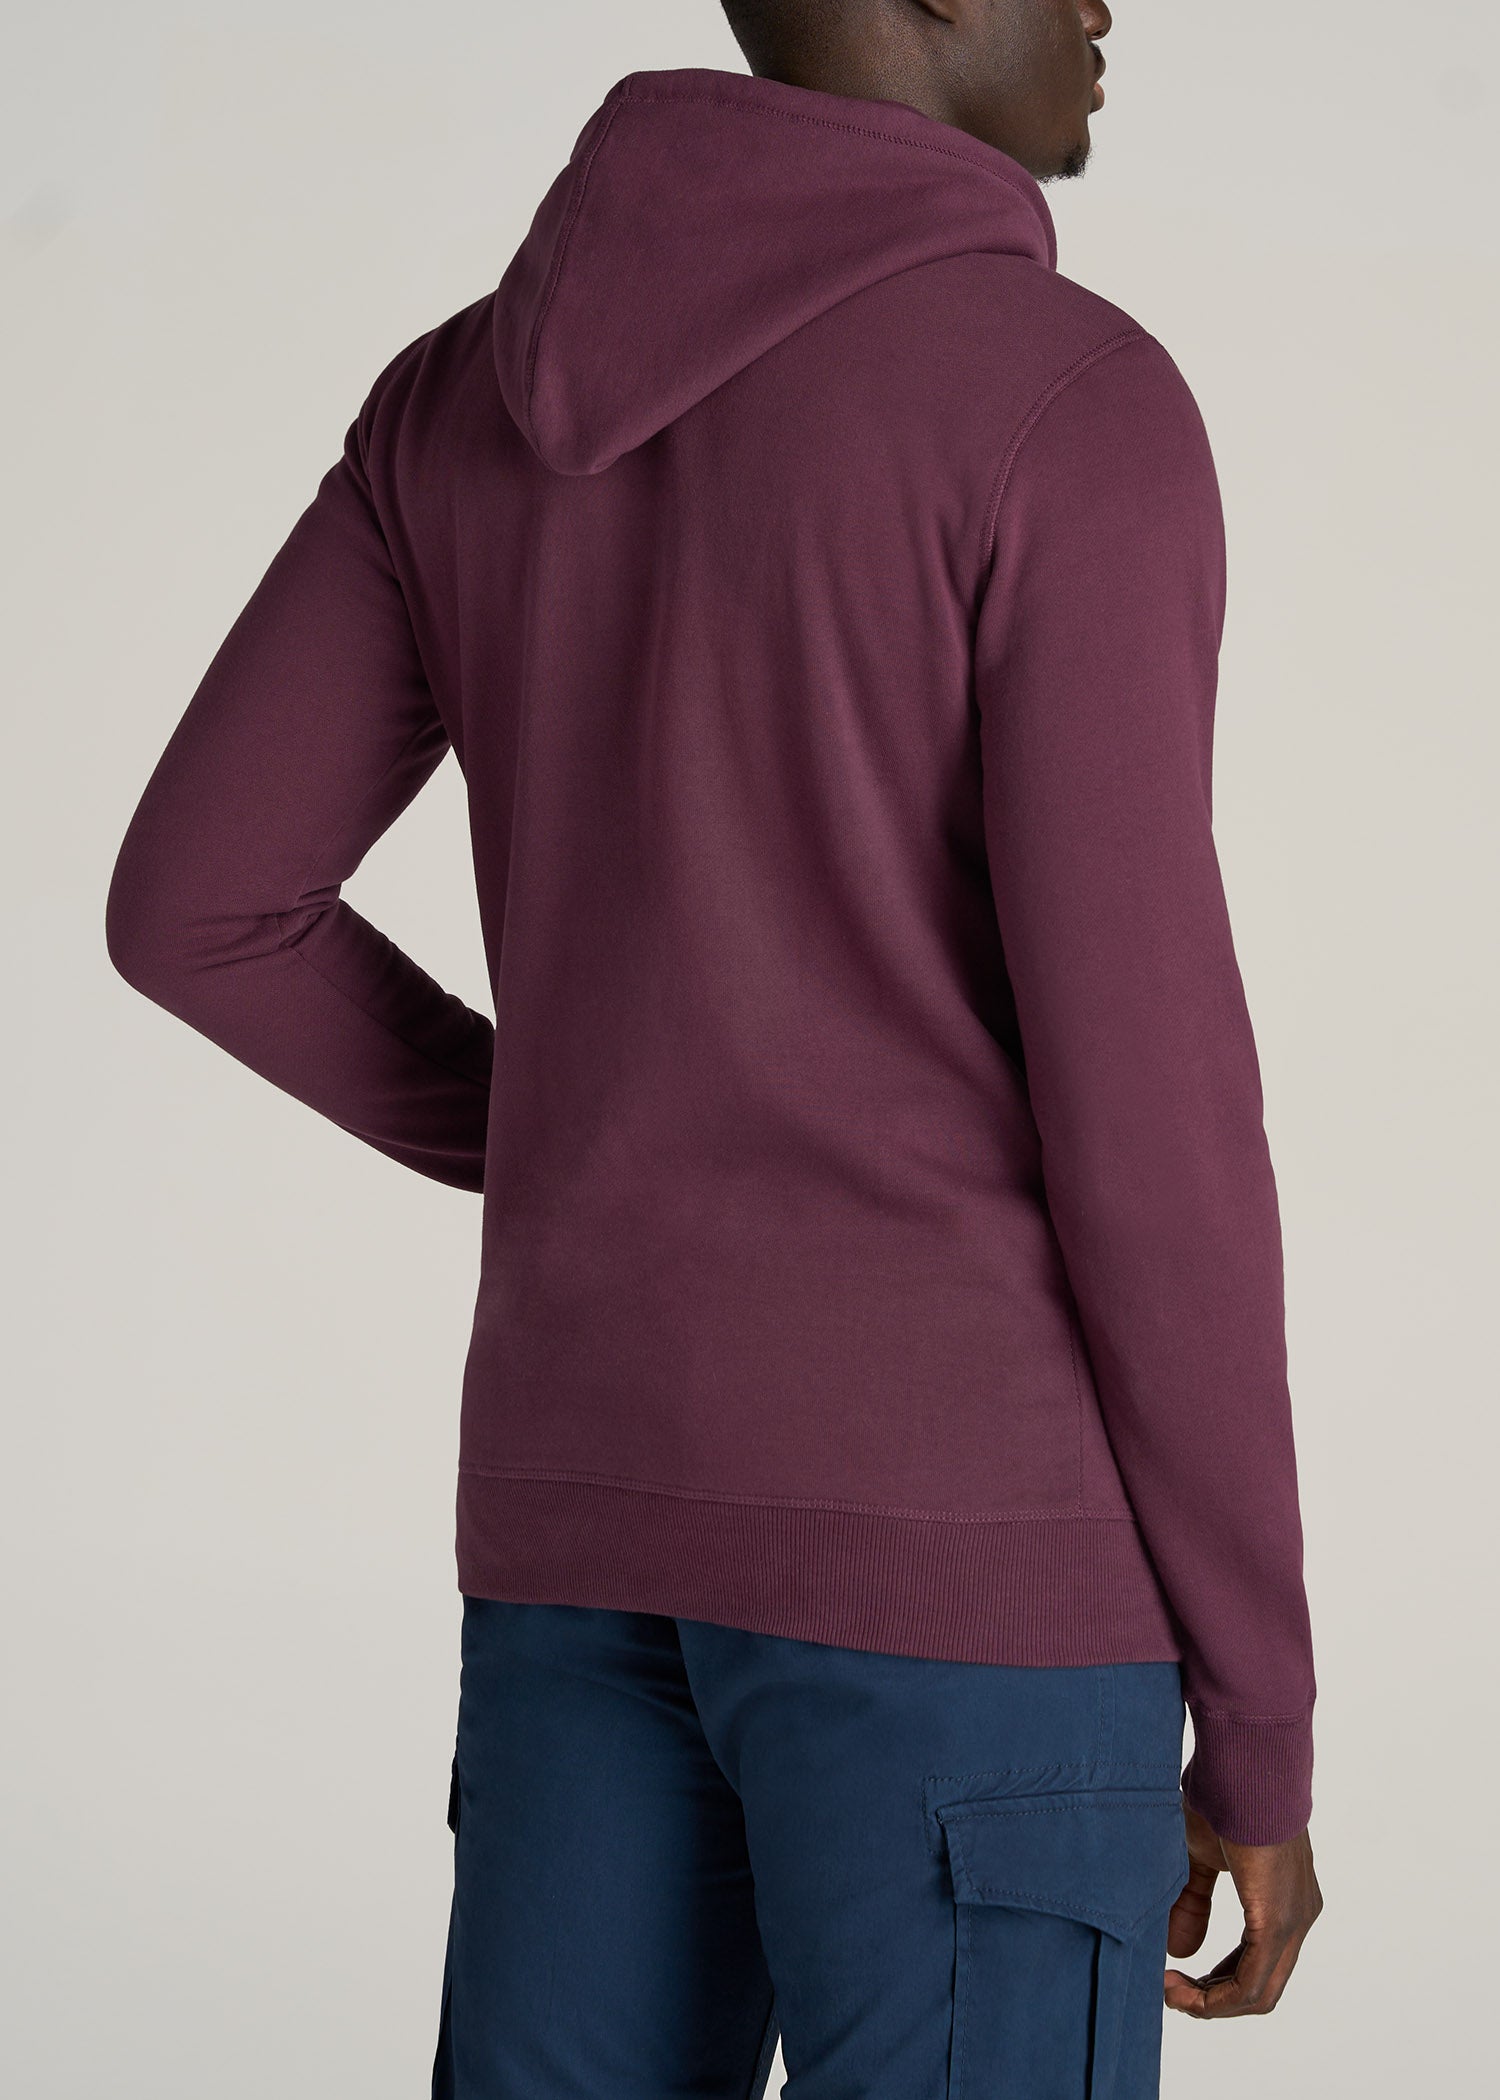 Men's Tall Wearever Fleece Quarter-Zip Sweatshirt Navy – American Tall